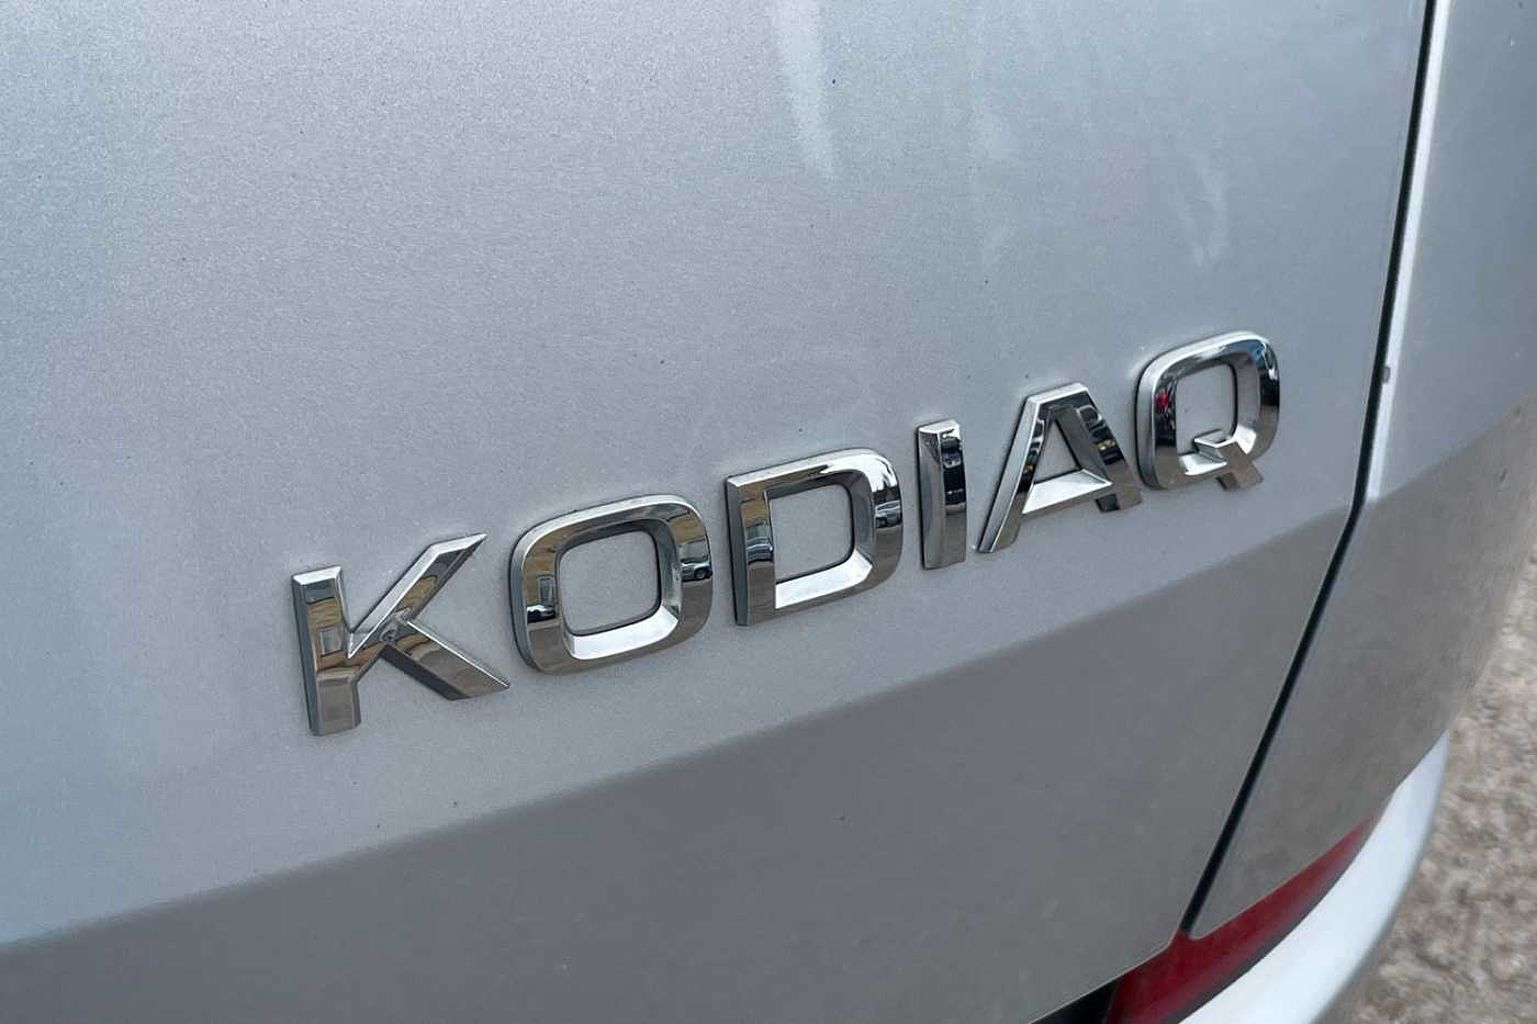 SKODA Kodiaq SE Technology (7 seats) 2.0 TDI 150 PS DSG